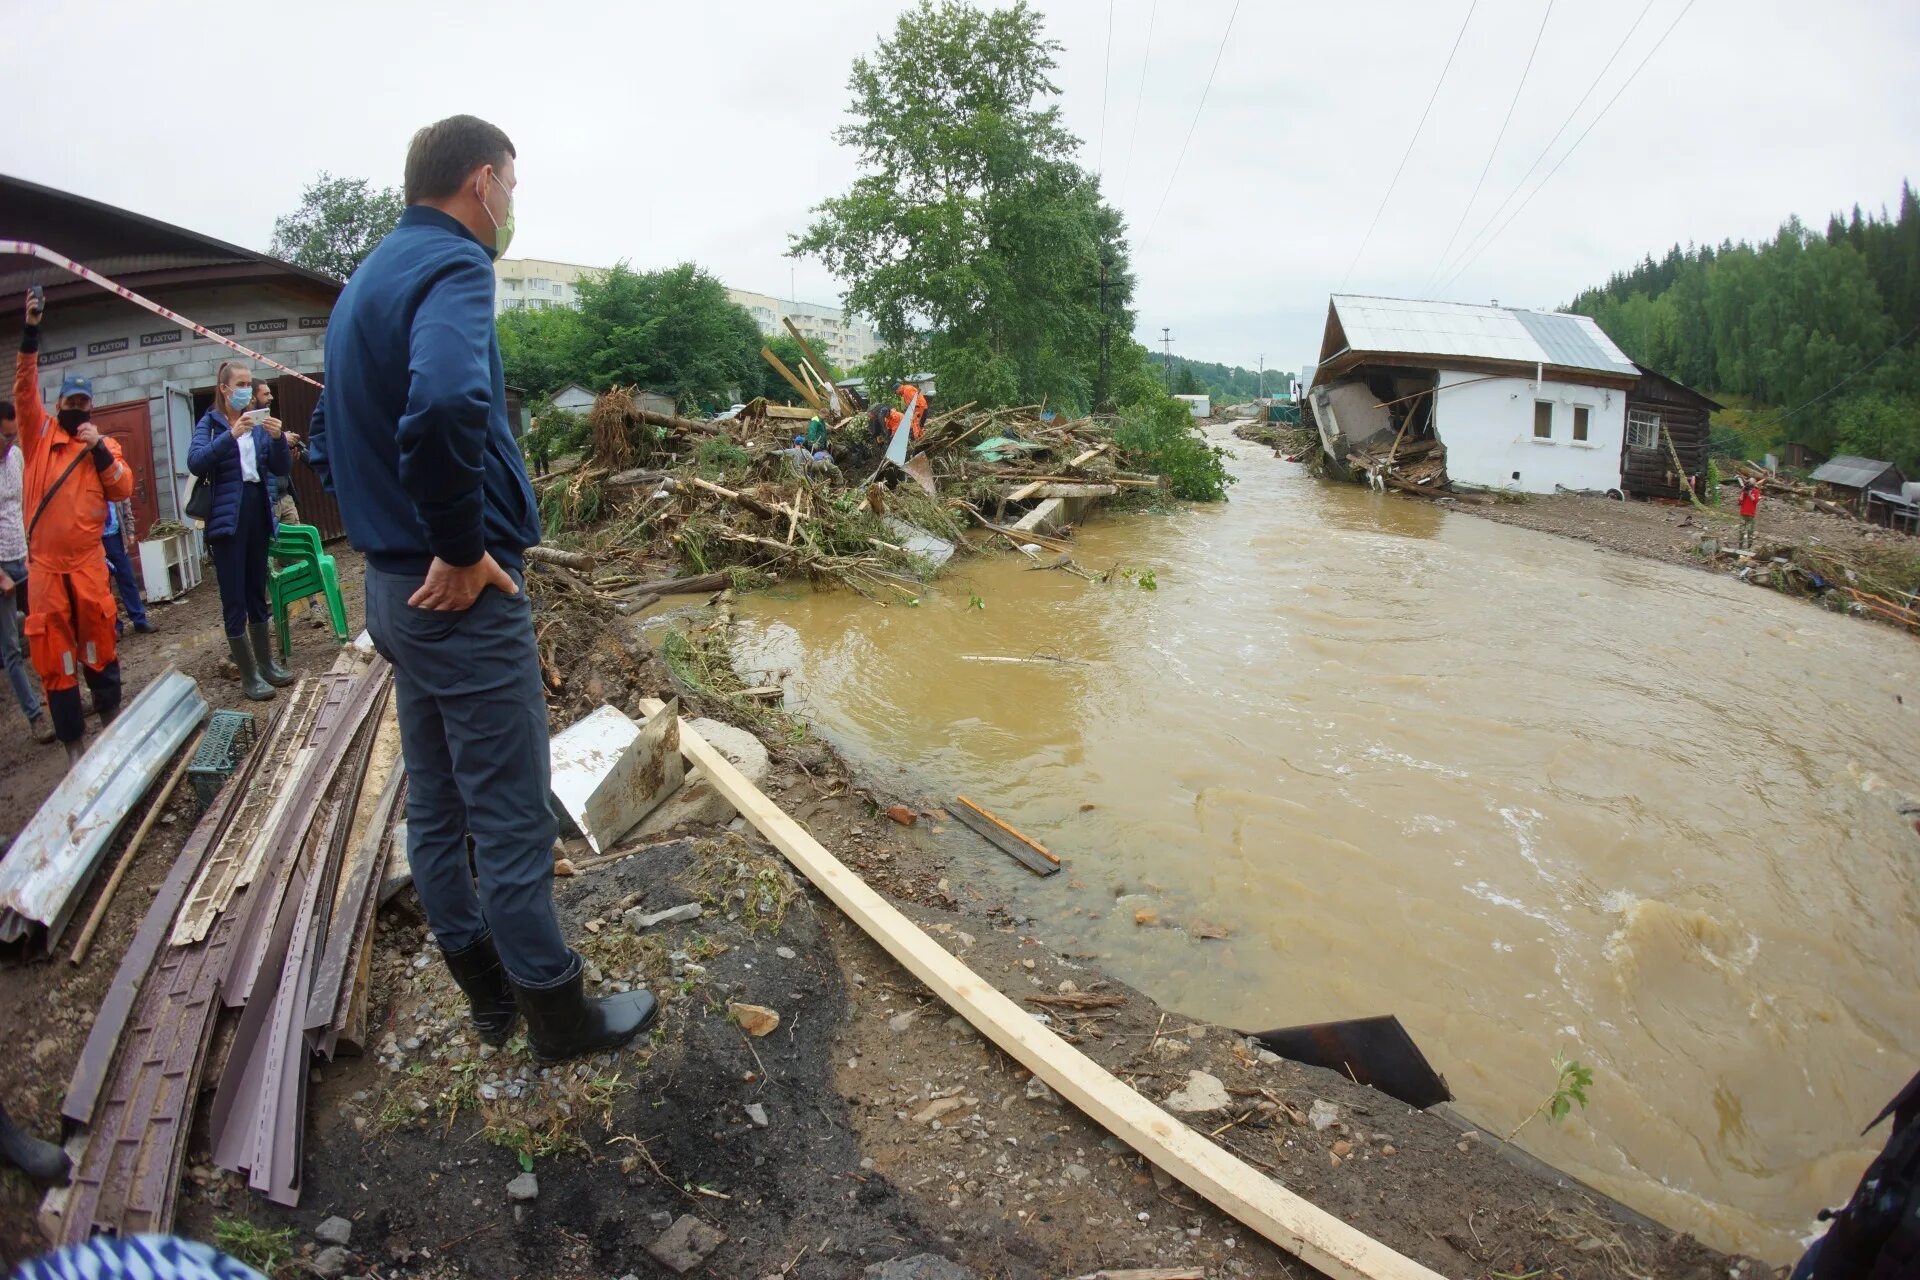 Потоп нижние Серги 2020. Наводнение в нижних Сергах Свердловской области. Нижние Серги наводнение 2020. Ликвидация последствий наводнения. Новотроицк паводок сегодня